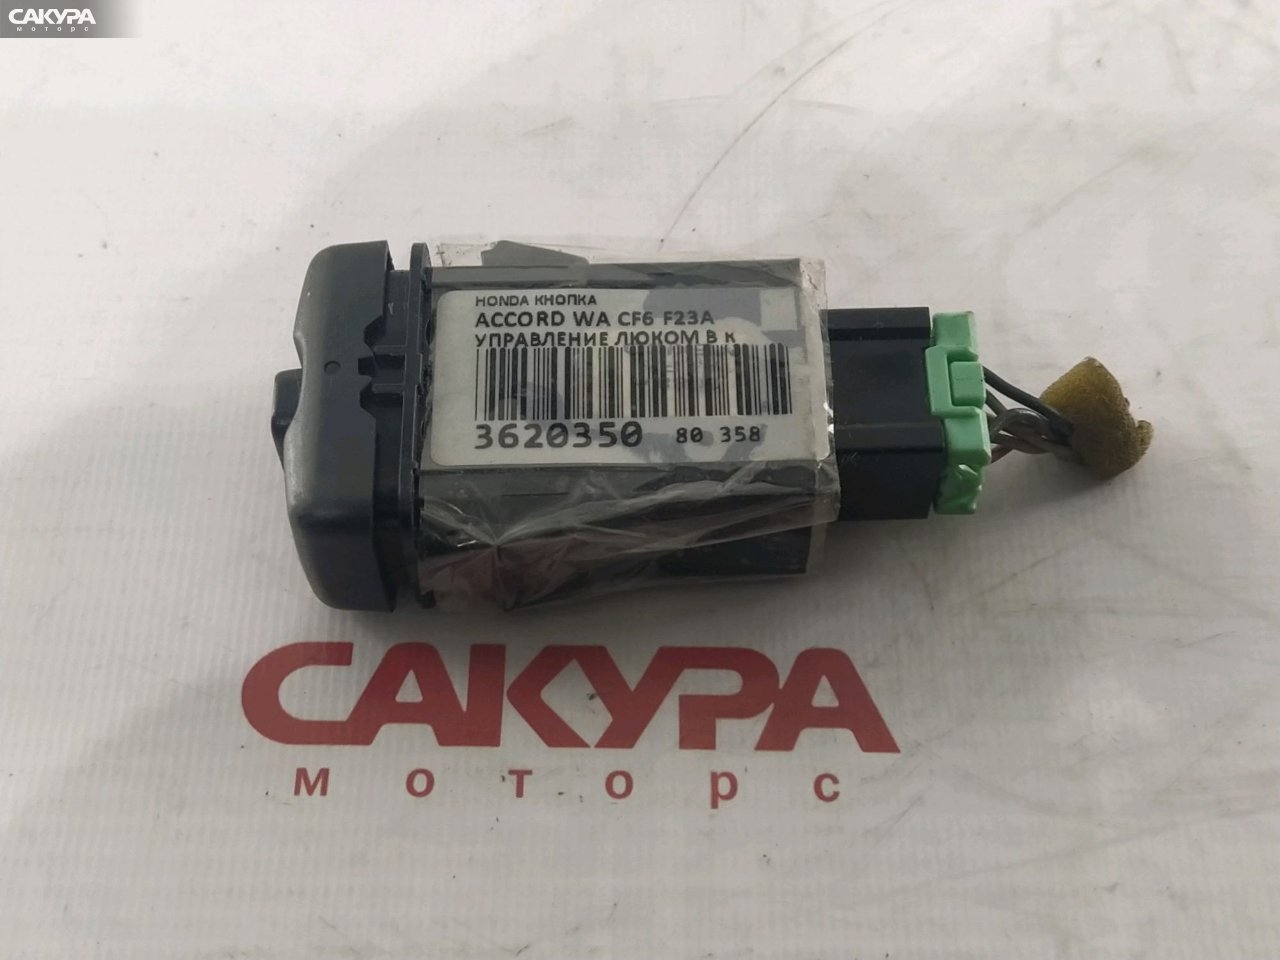 Кнопки в салон Honda Accord Wagon CF6 F23A: купить в Сакура Красноярск.